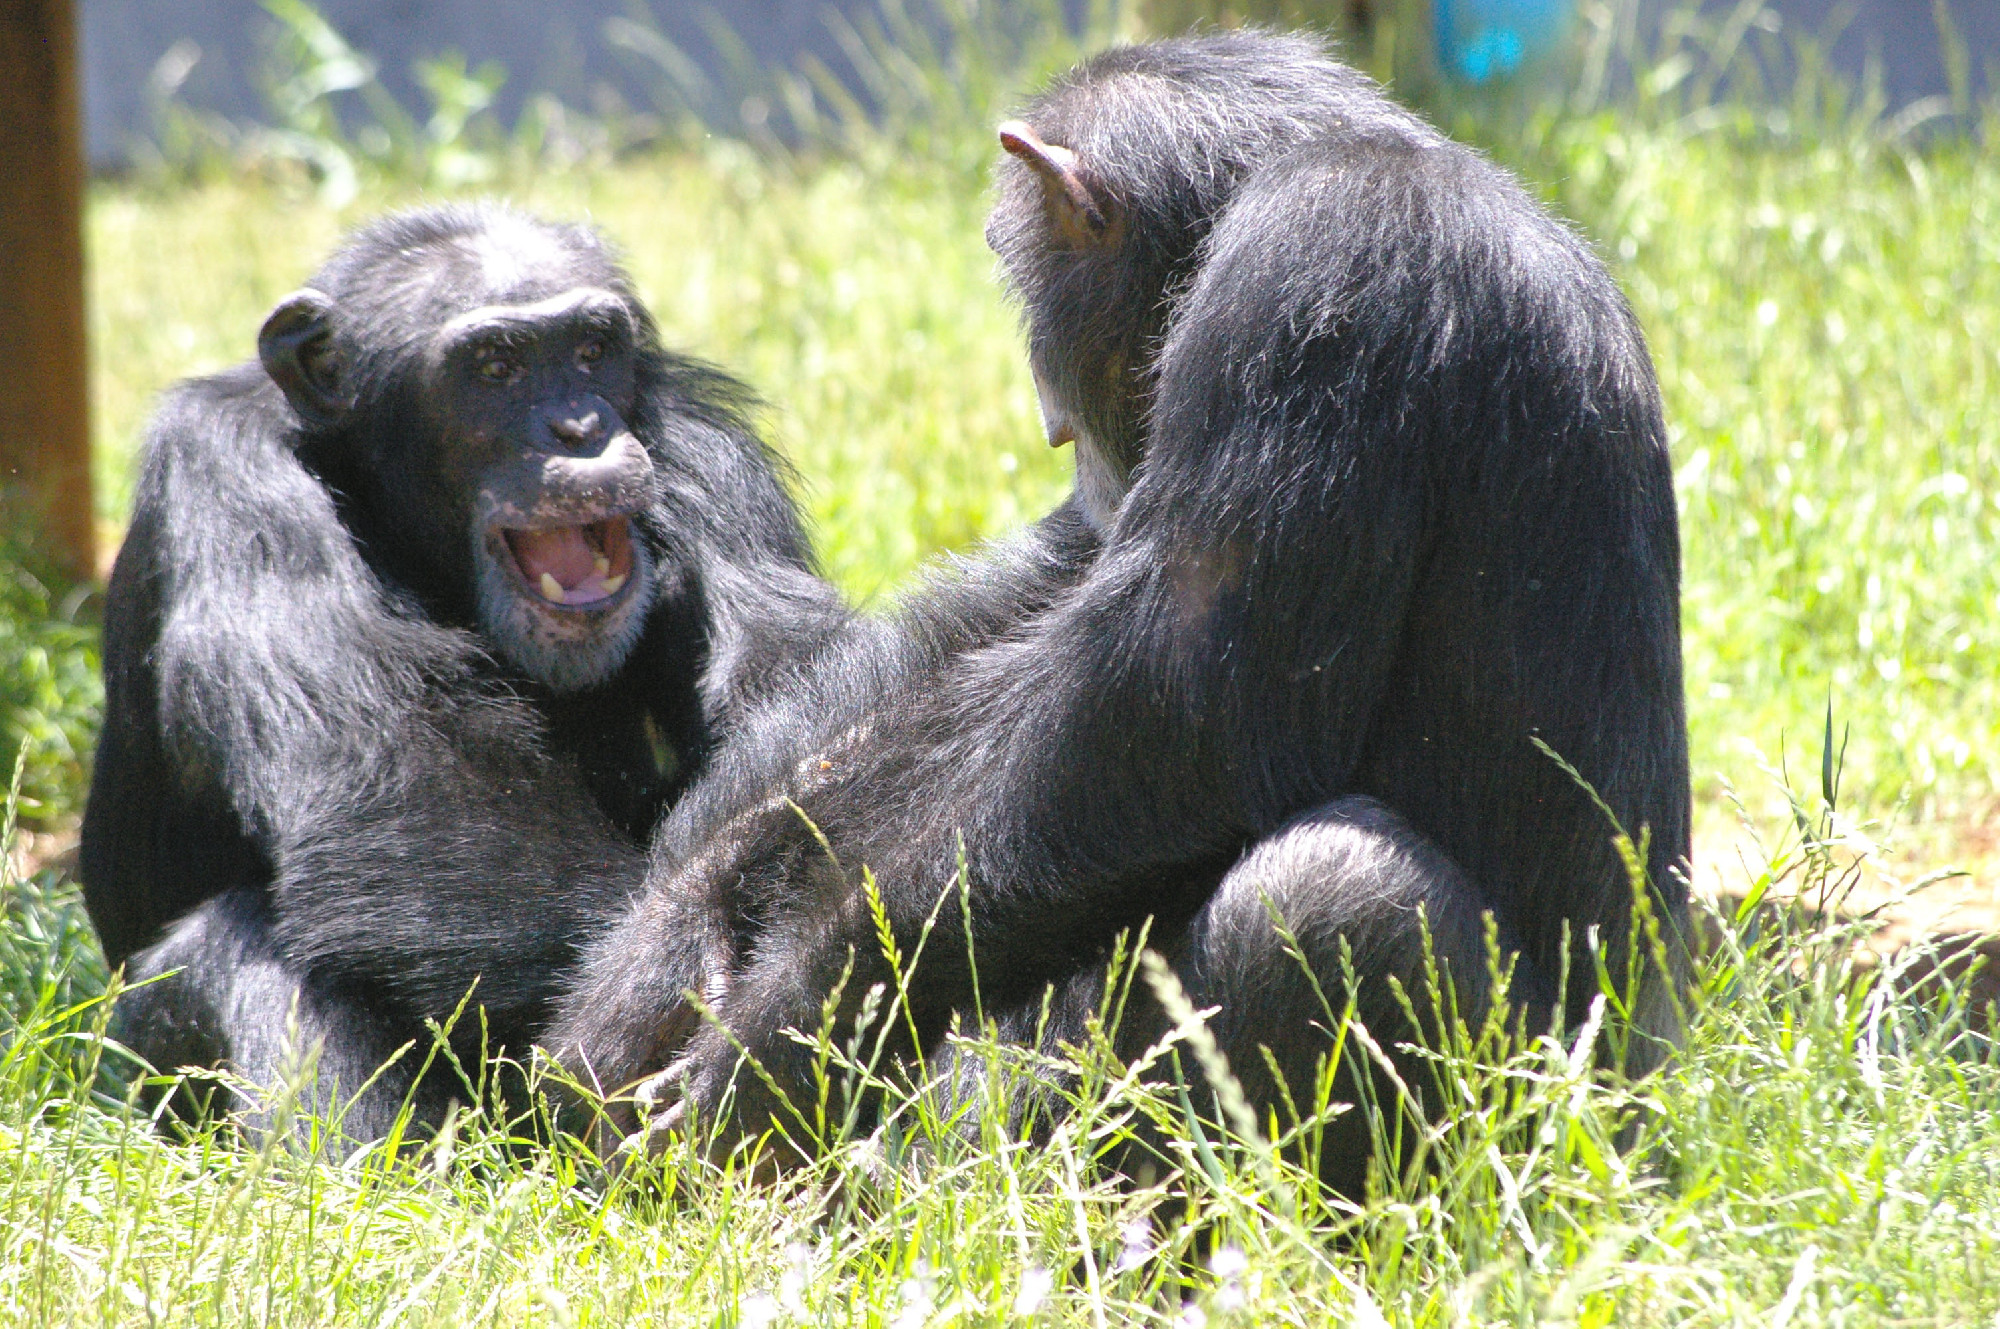 Van-e jogunk a sokszor szenvedést okozó kísérleteknek alávetni a csimpánzokat?